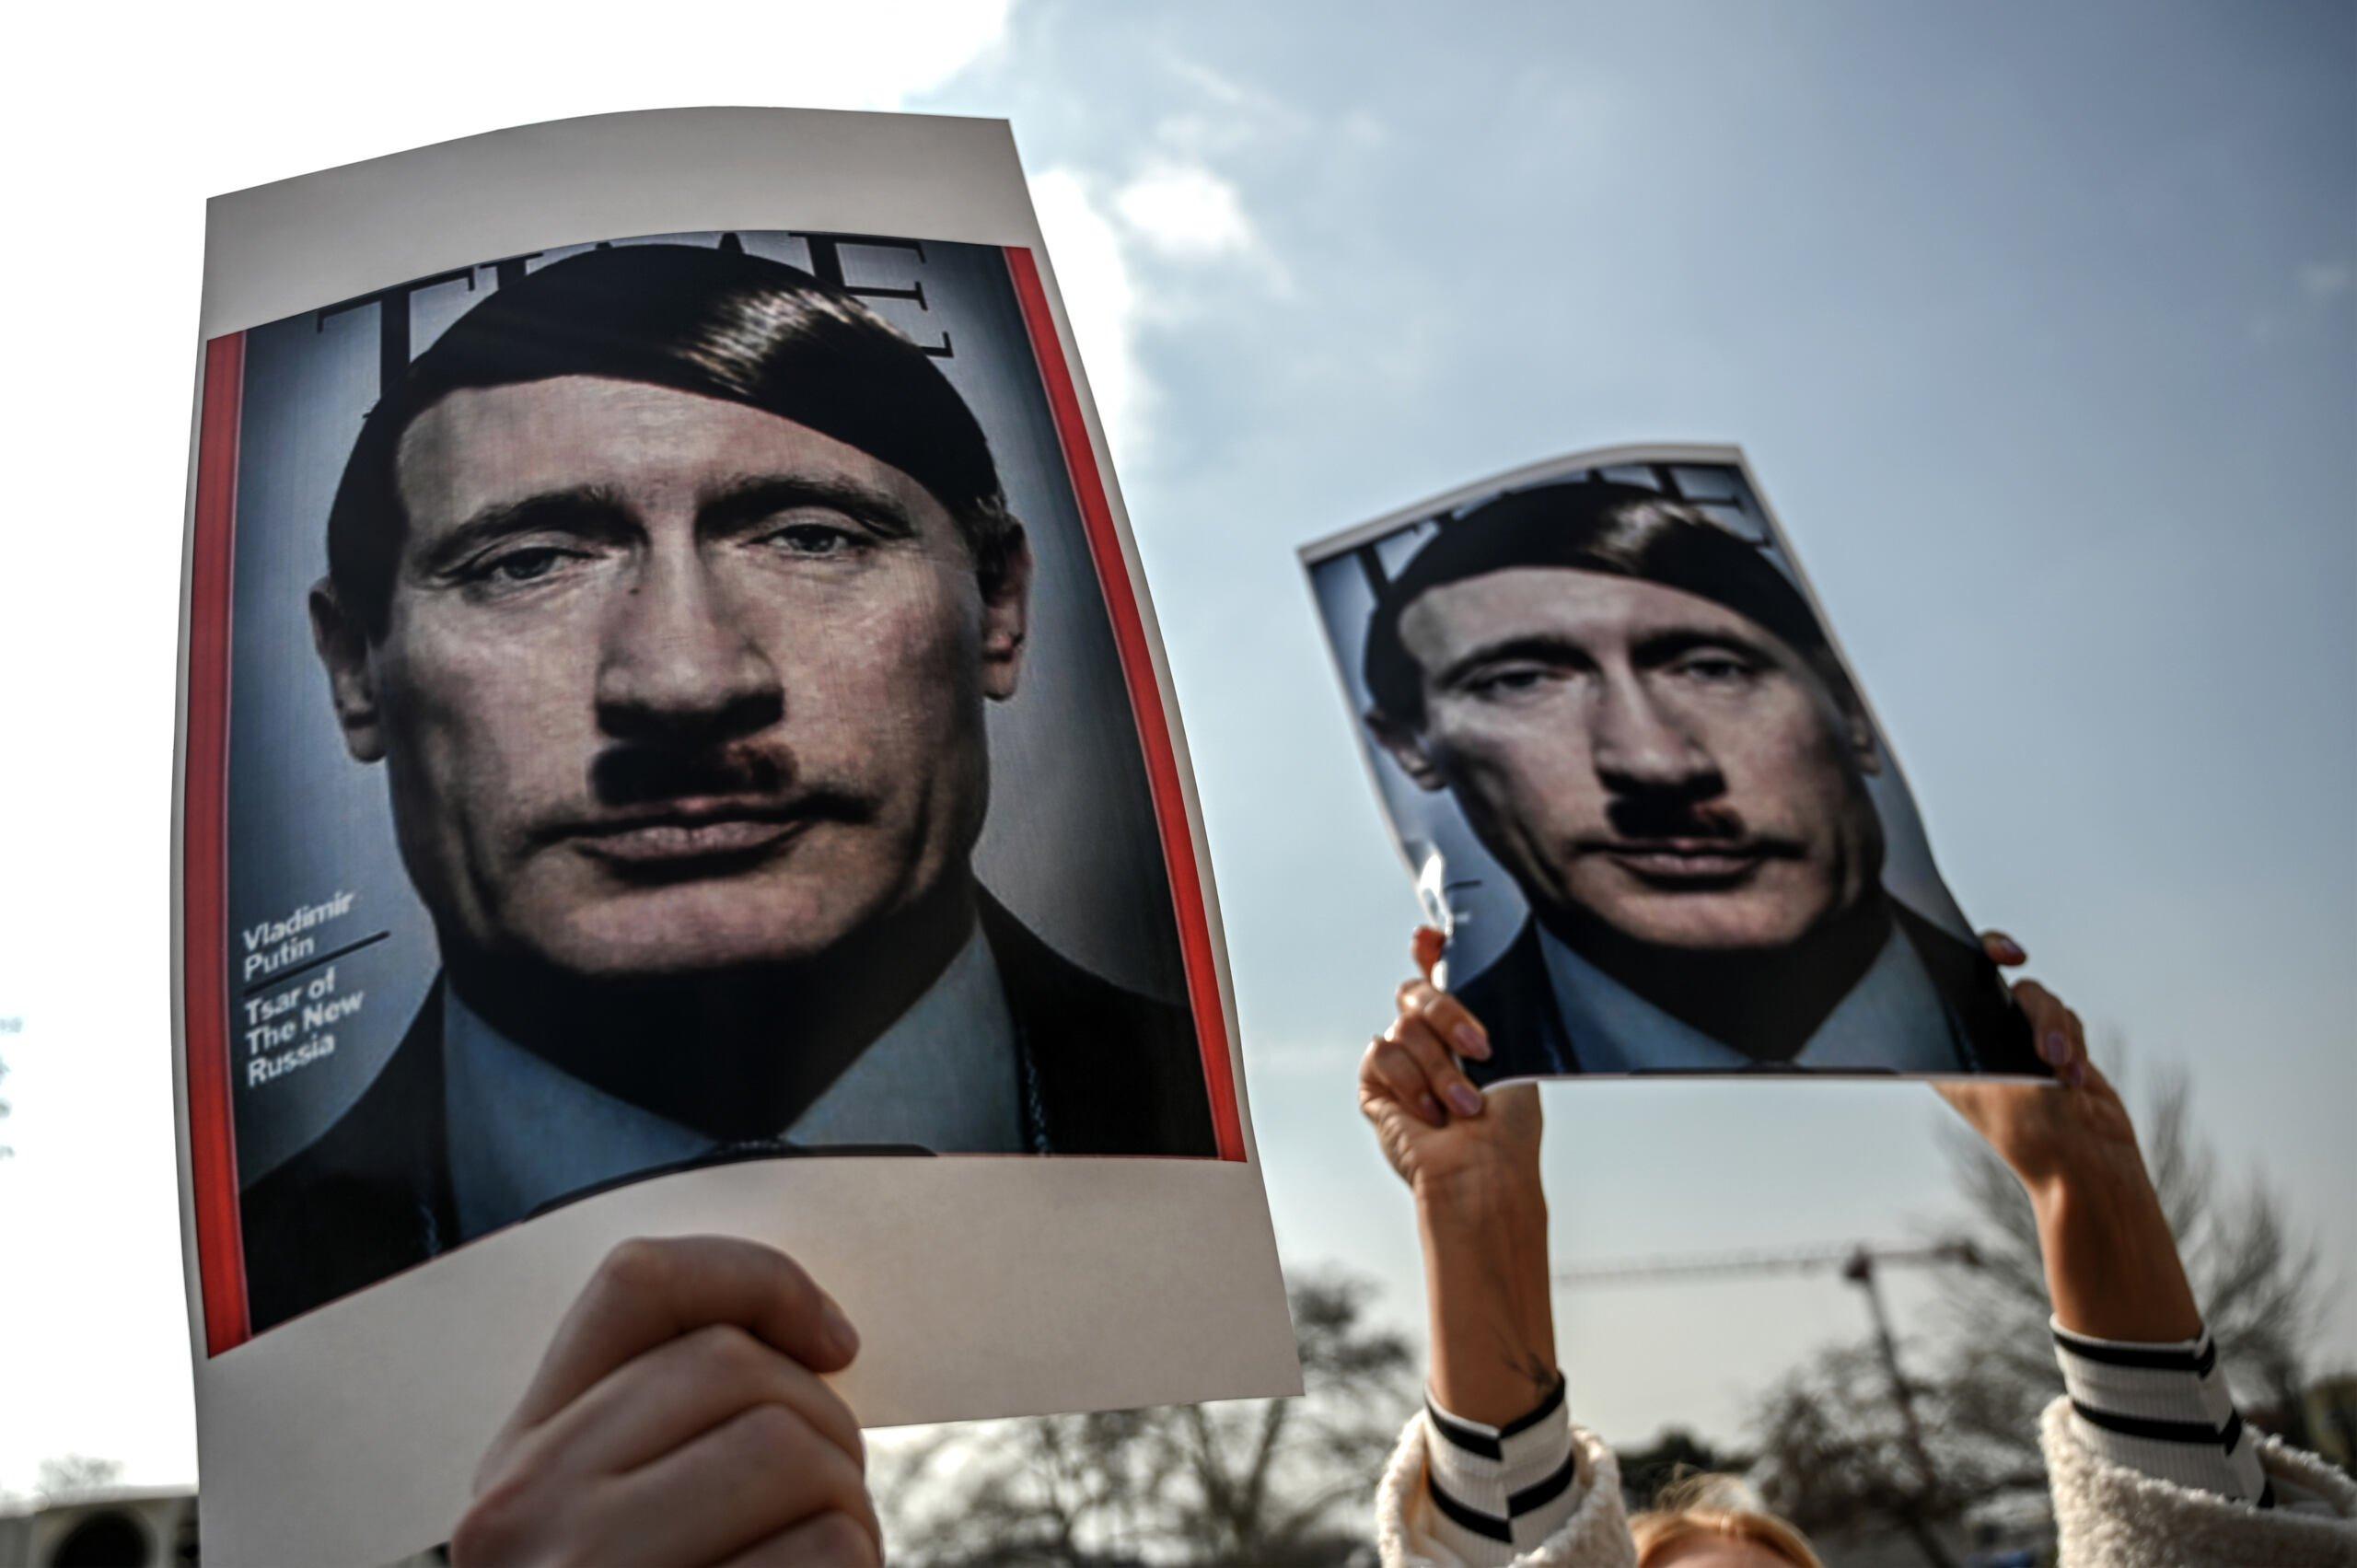 Zdjęcia Putina jako Hitlera podczas demonstracji w Stambule